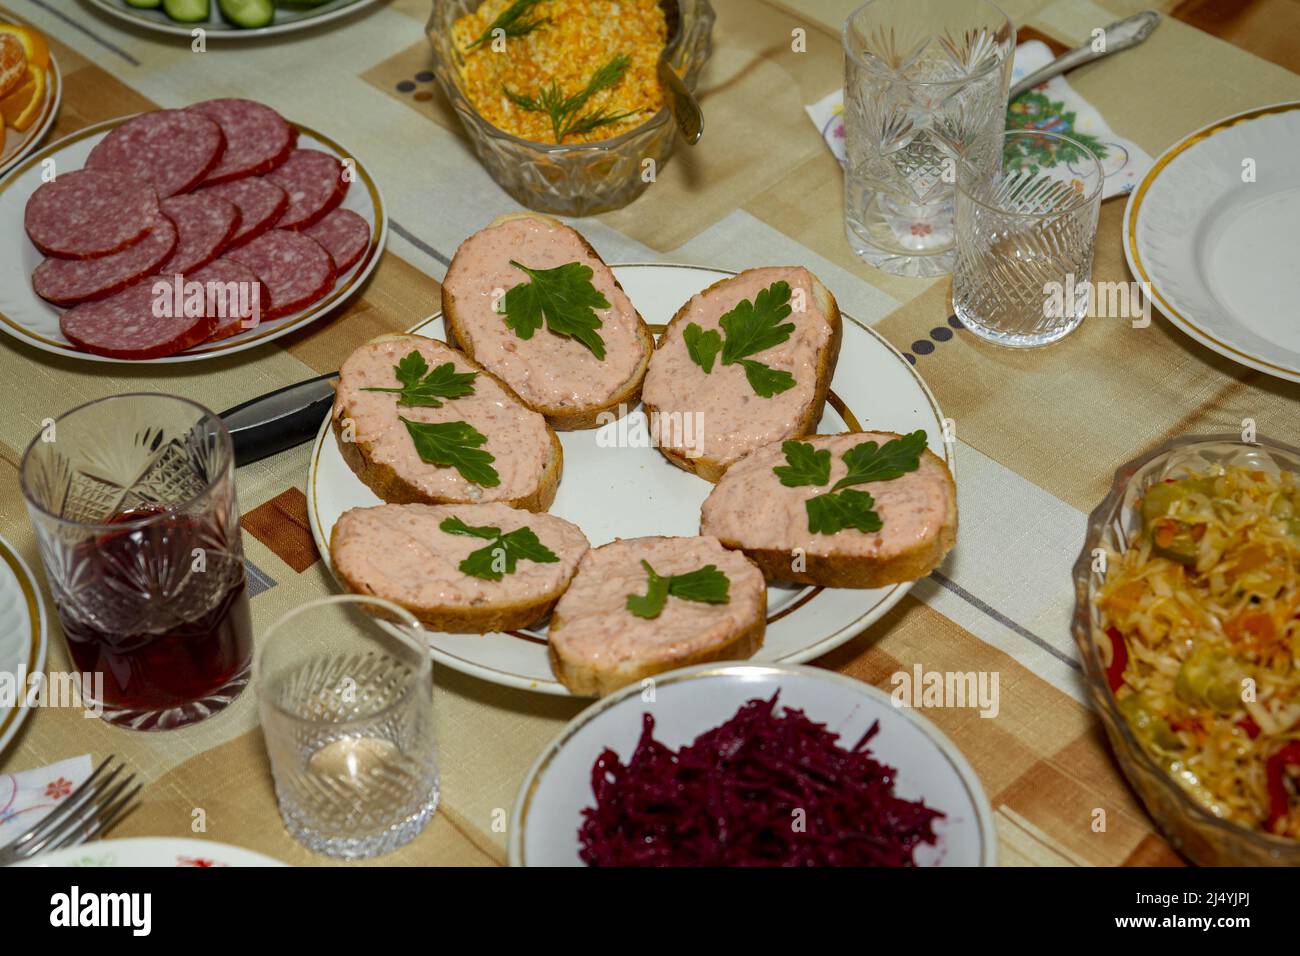 Authentique dîner maison décontracté avec sandwichs, salades et vin. Banque D'Images